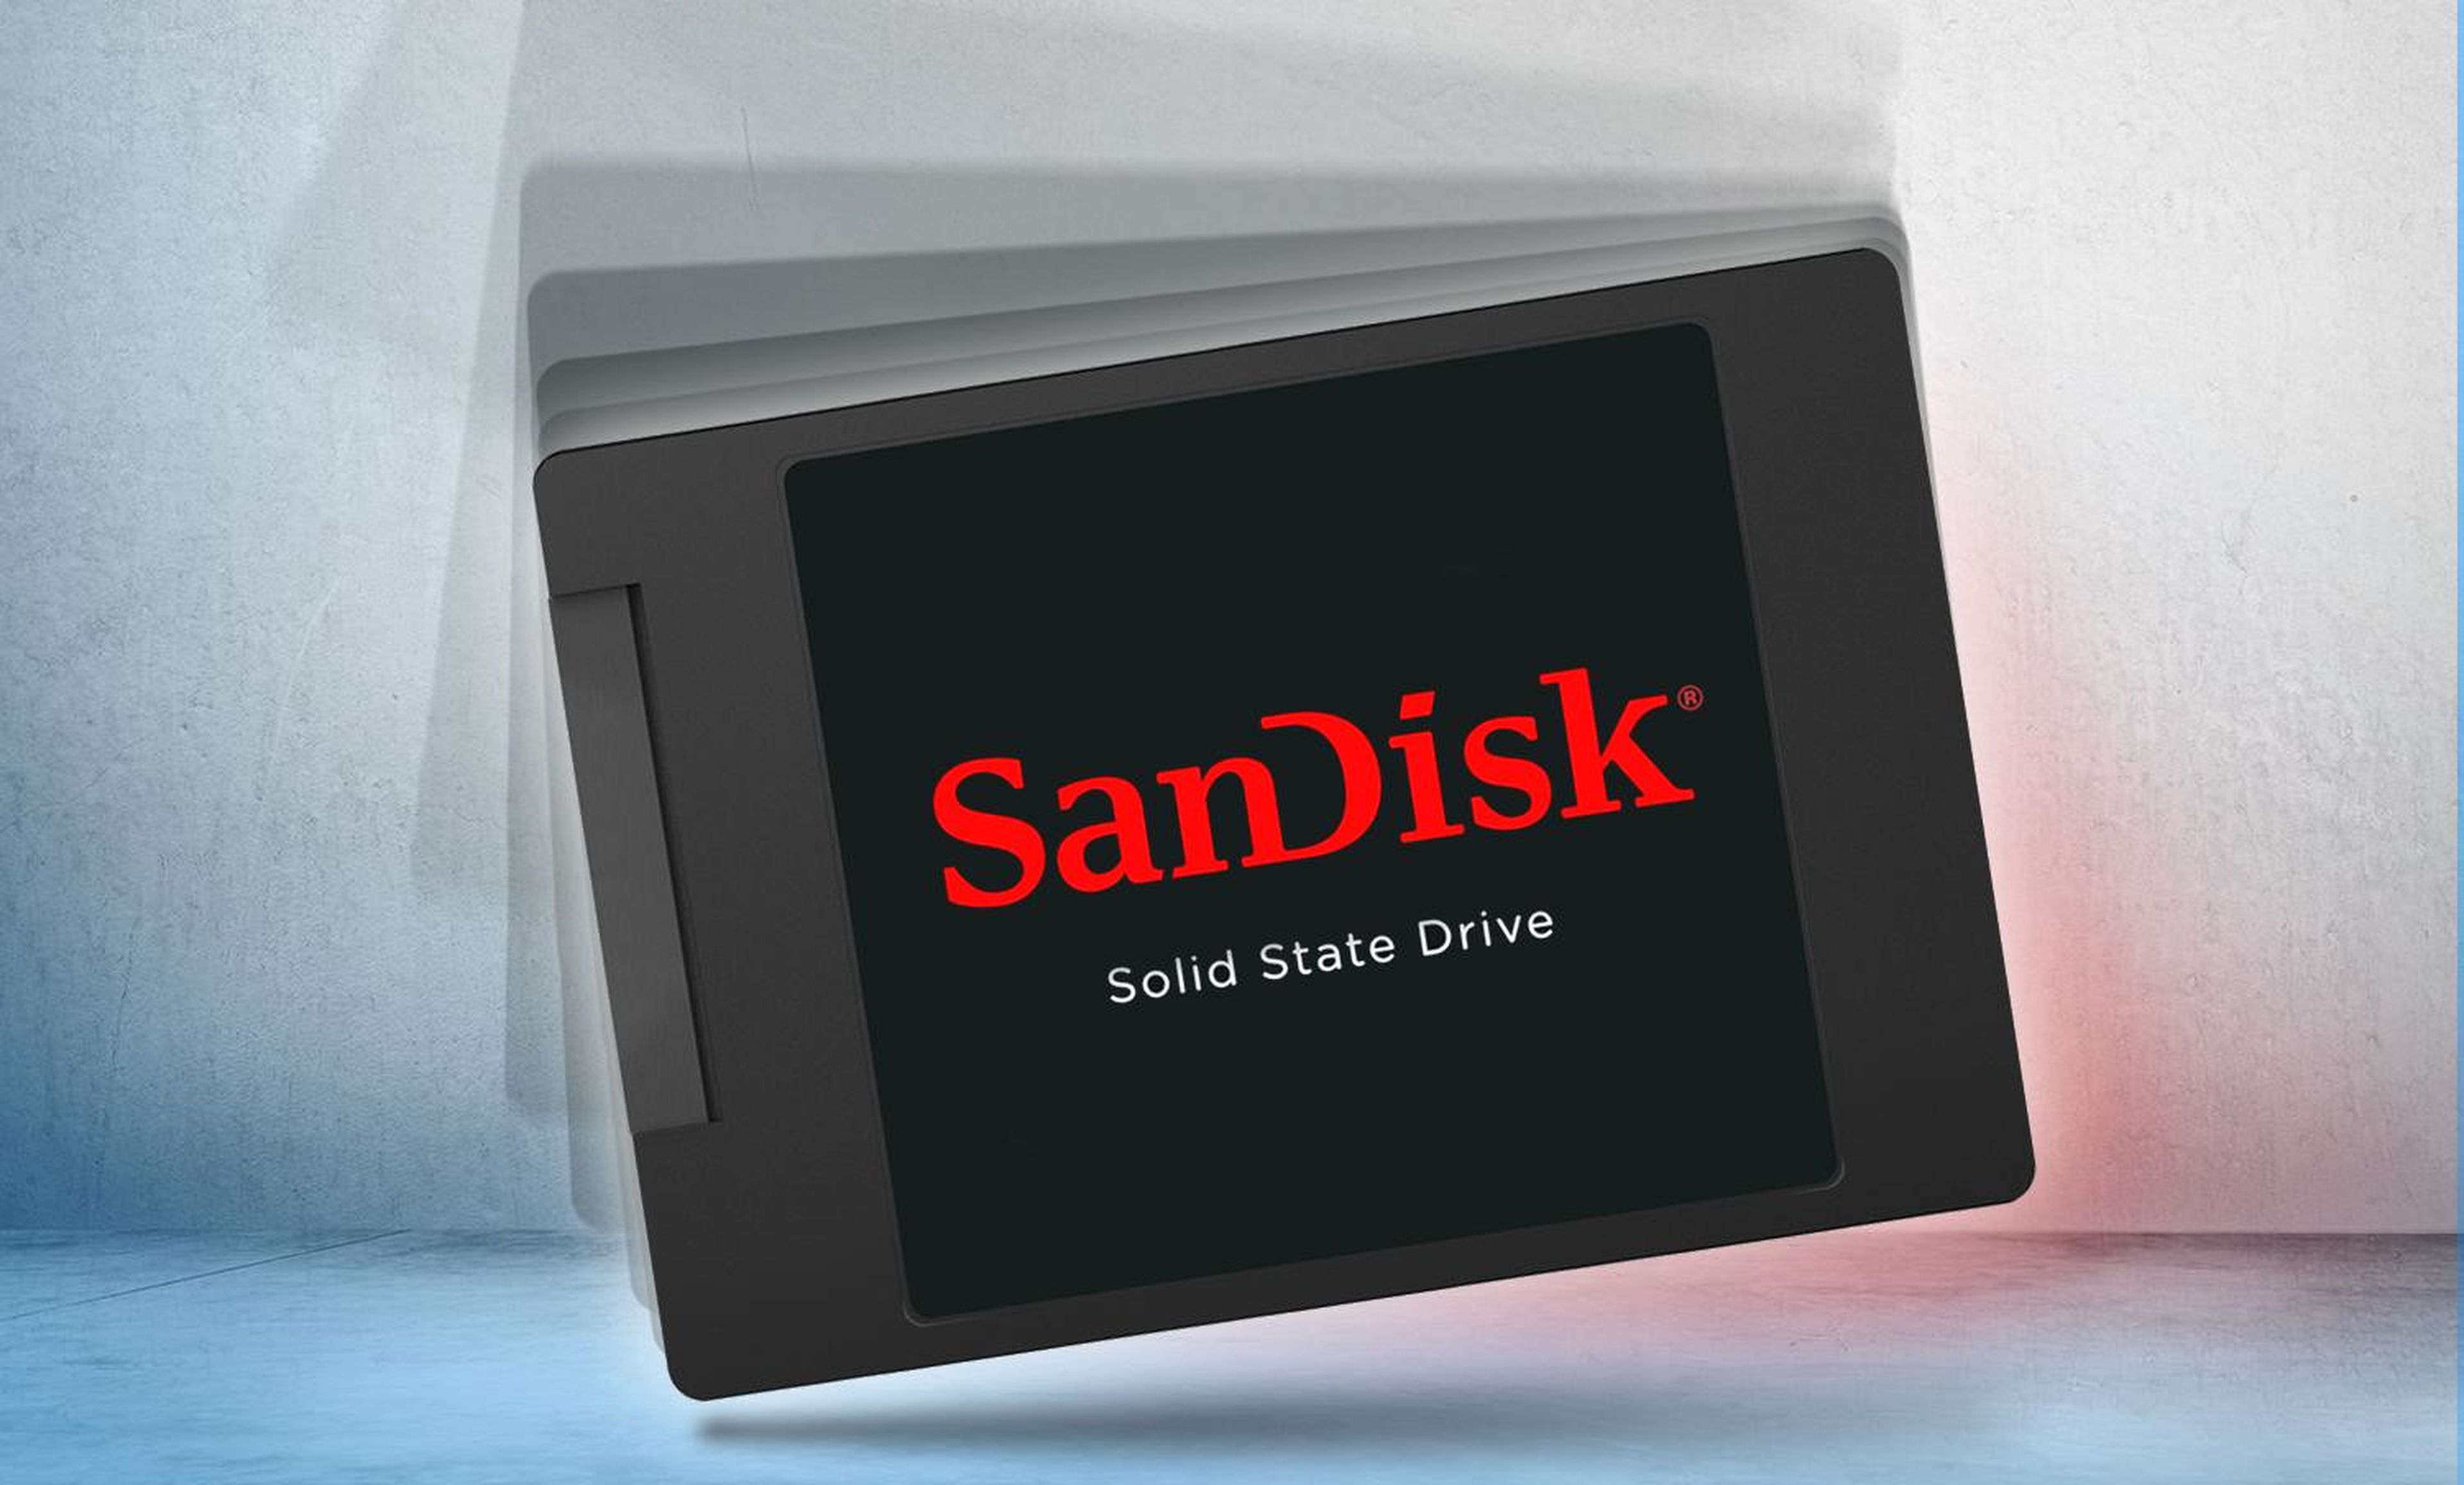 SSD SanDisk